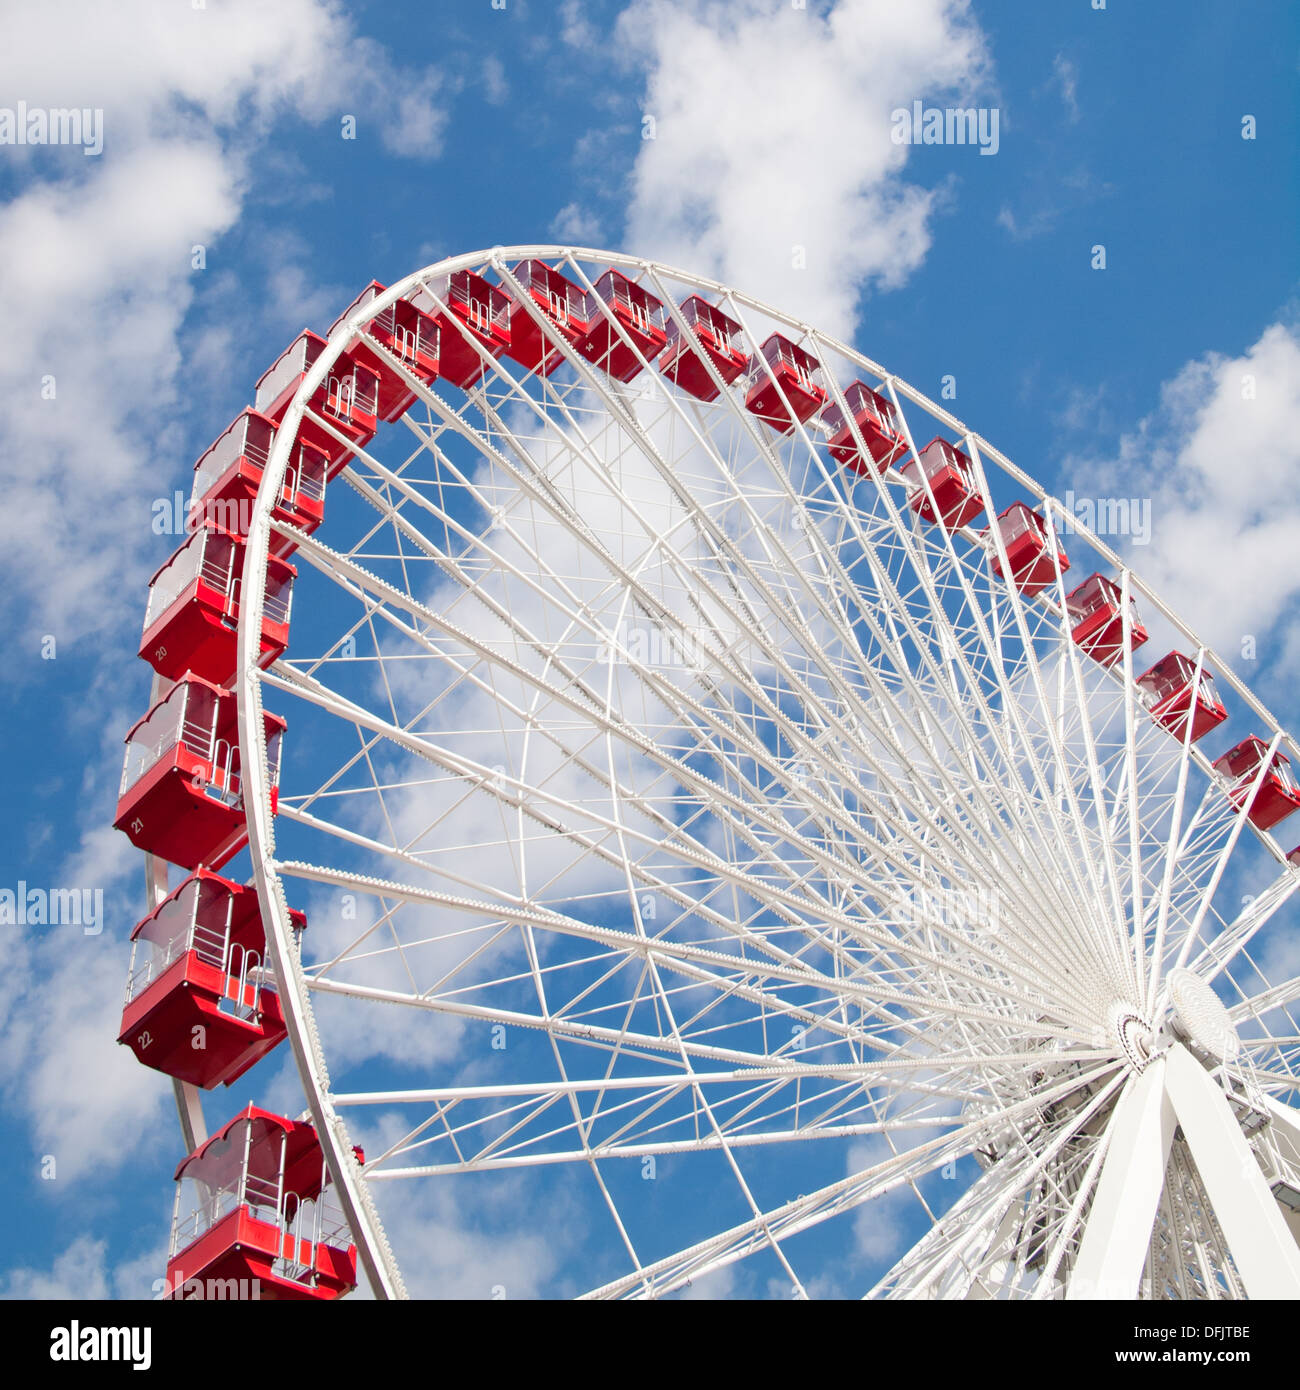 Ein Blick auf das beliebte Riesenrad am Navy Pier in Chicago, Illinois an einem Tag Sommer, blauer Himmel. Stockfoto